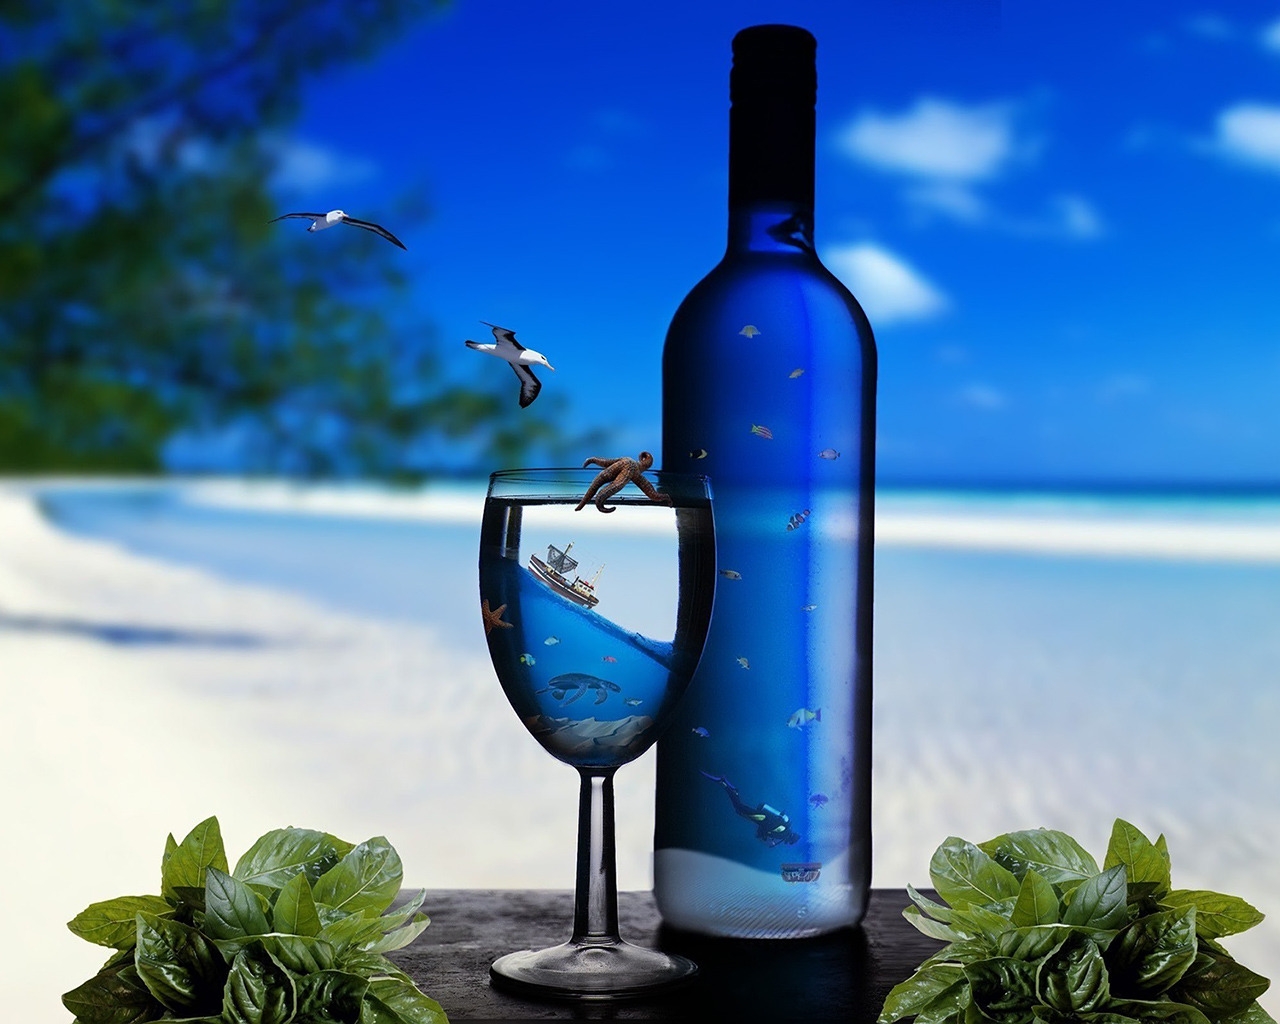 Ocean Glass Bottles for 1280 x 1024 resolution